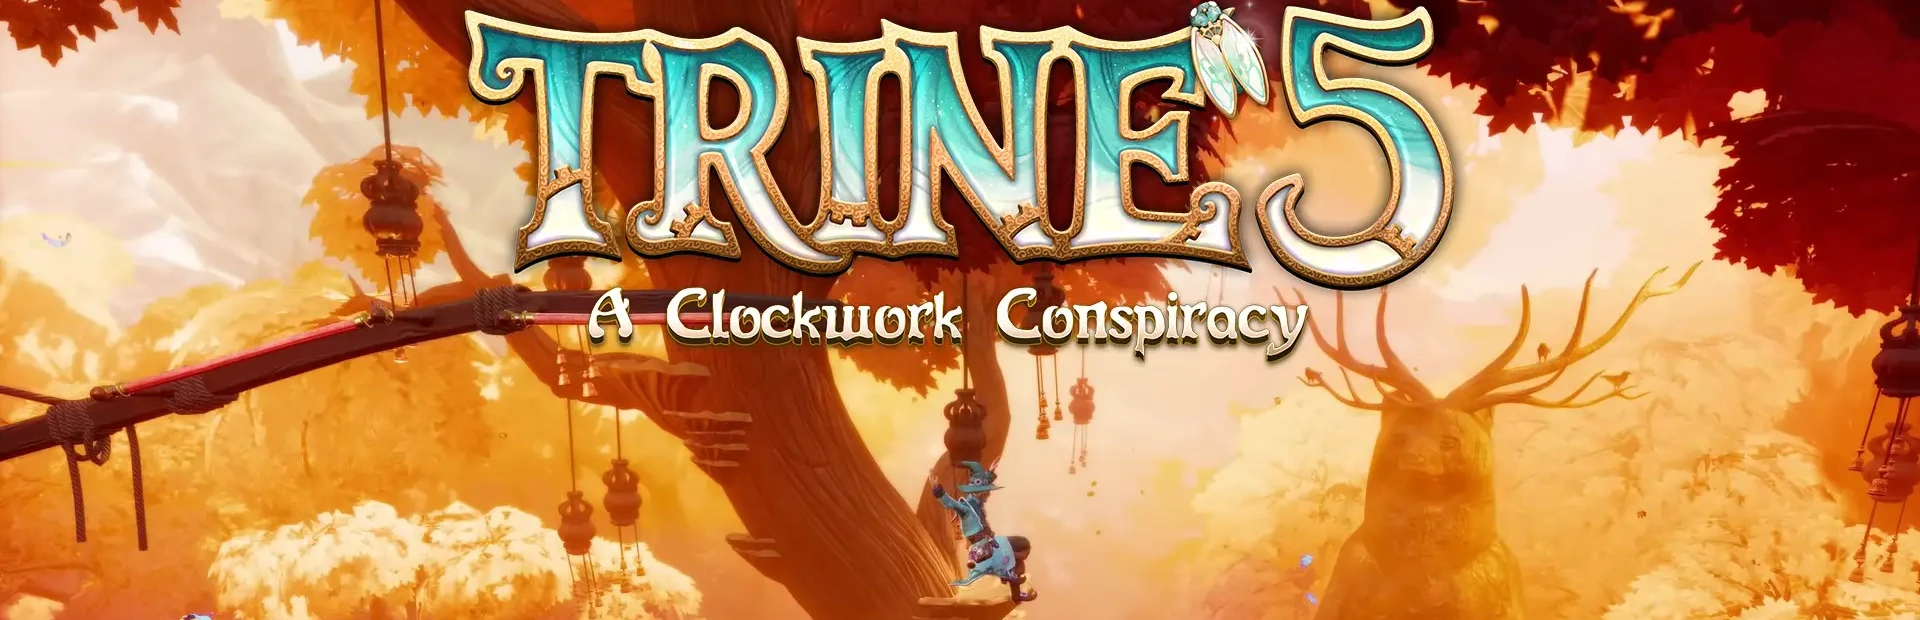 دانلود بازی Trine 5: A Clockwork Conspiracy برای کامپیوتر | گیمباتو